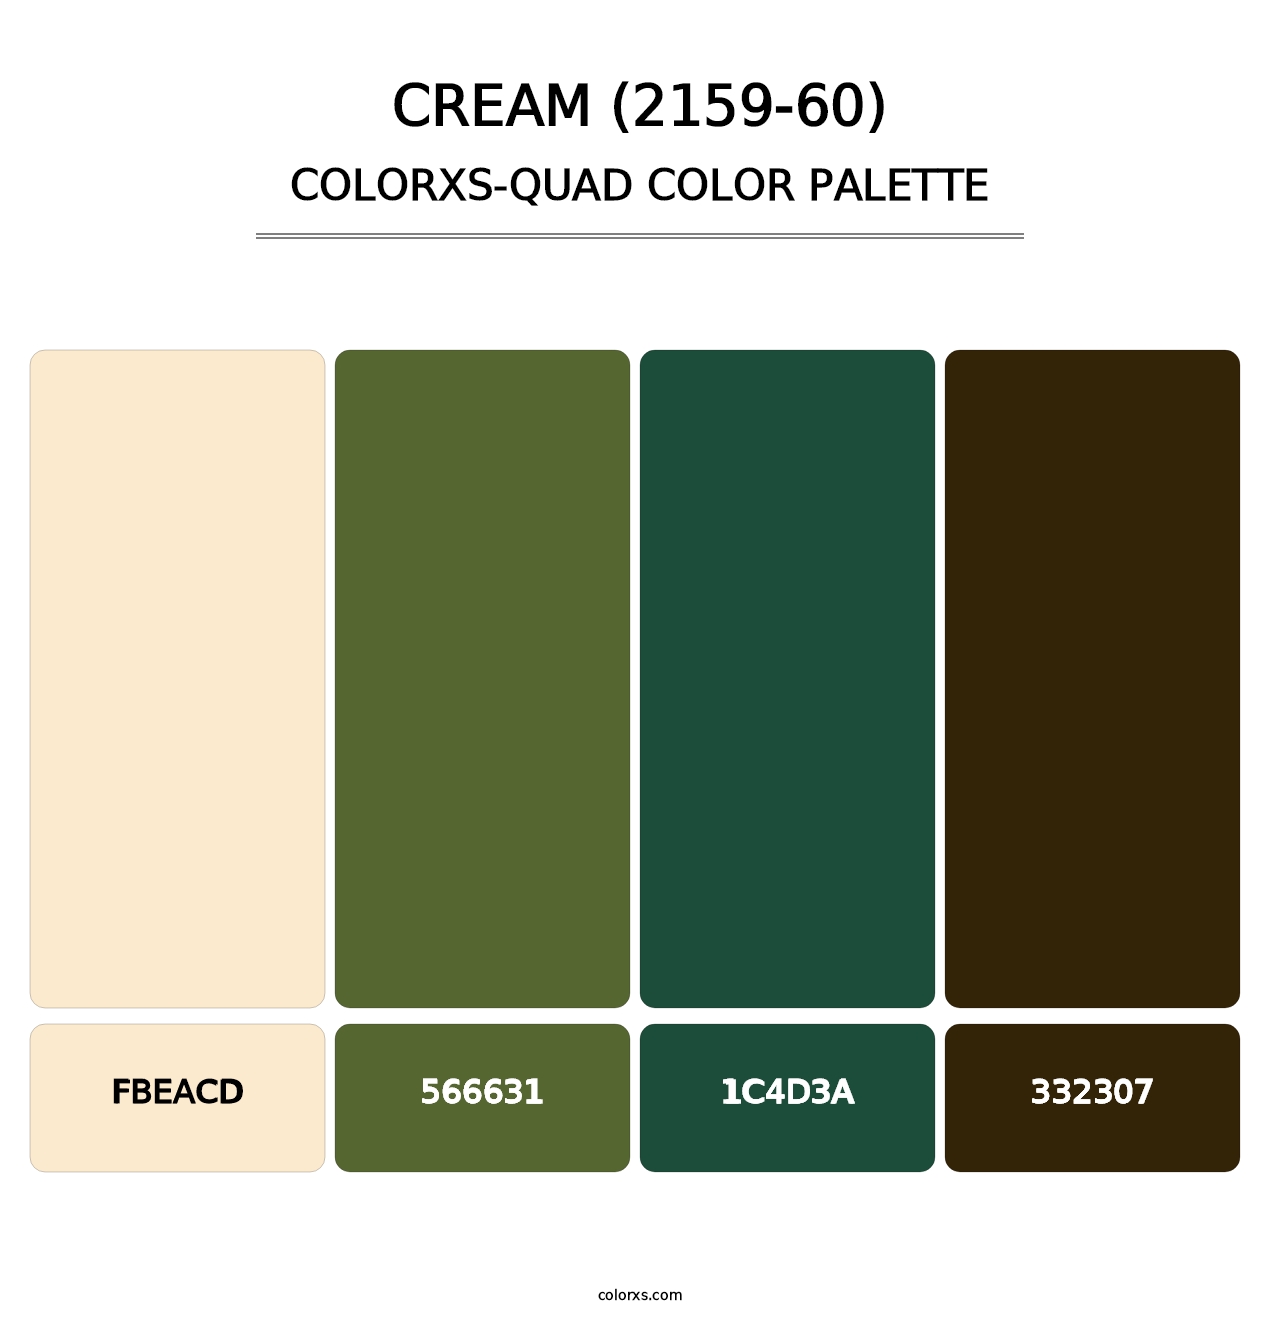 Cream (2159-60) - Colorxs Quad Palette